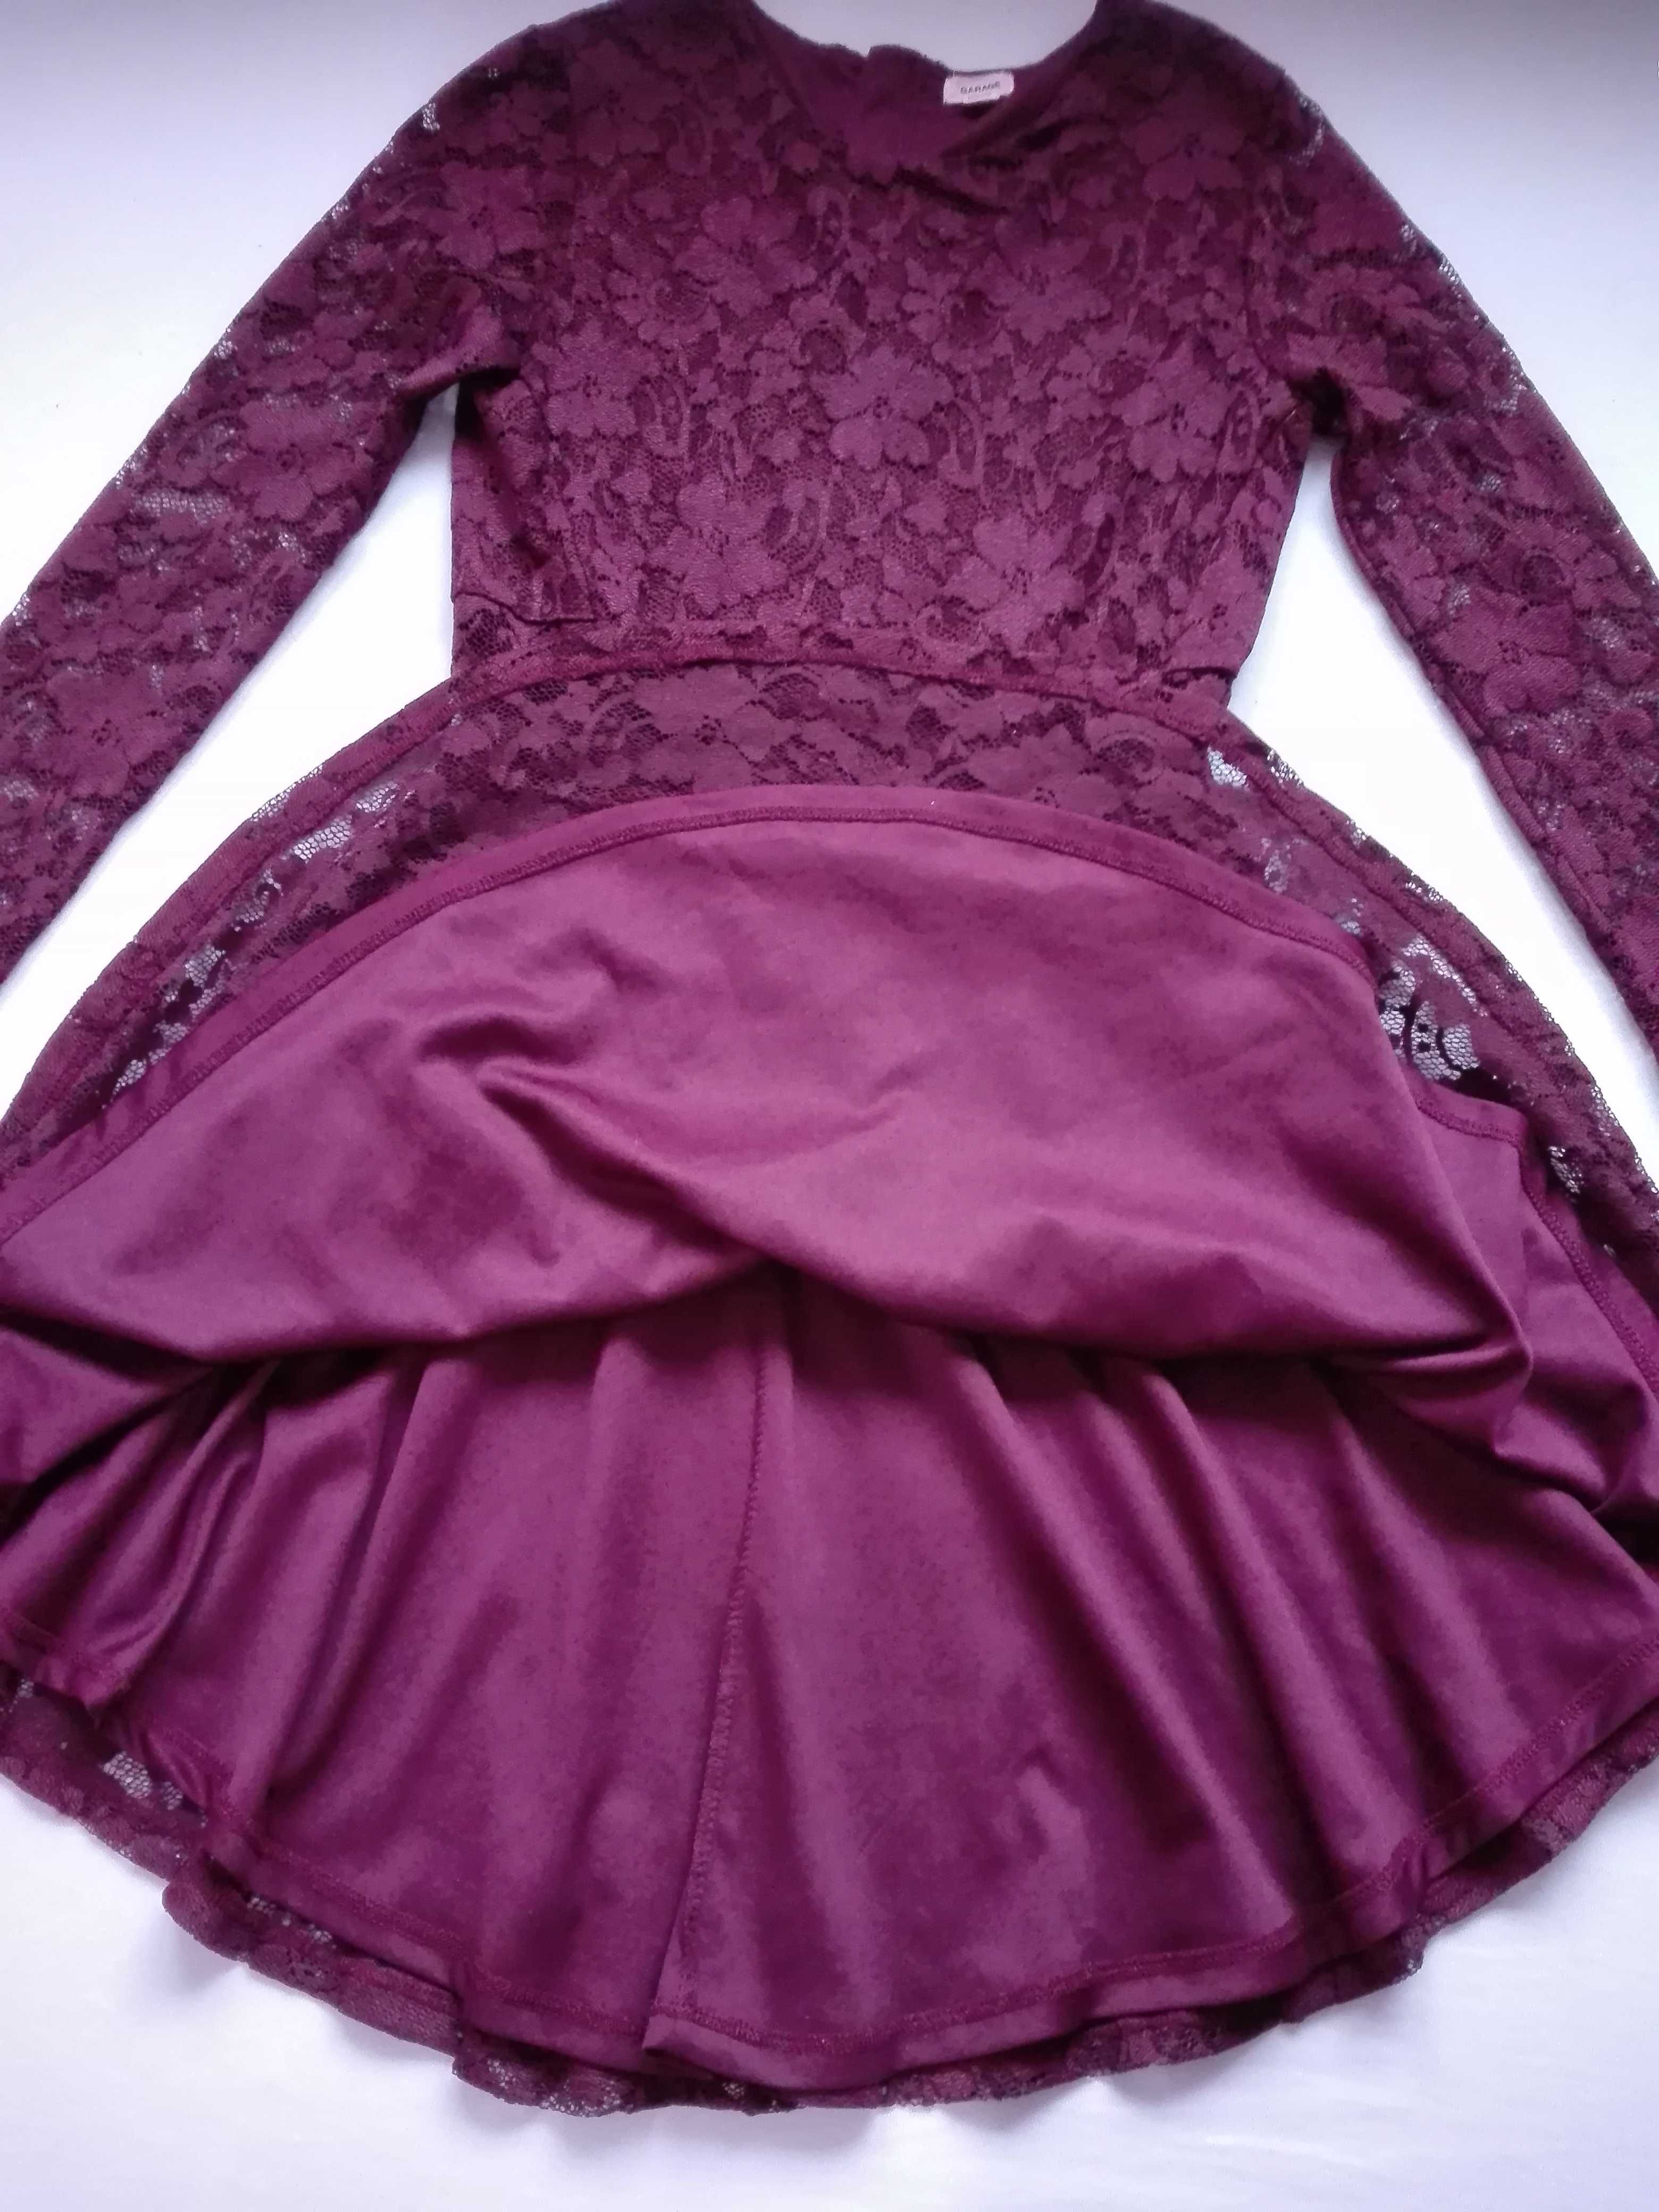 bordowa/wiśniowa sukienka z koronki, koronkowa, M, 38, jak nowa